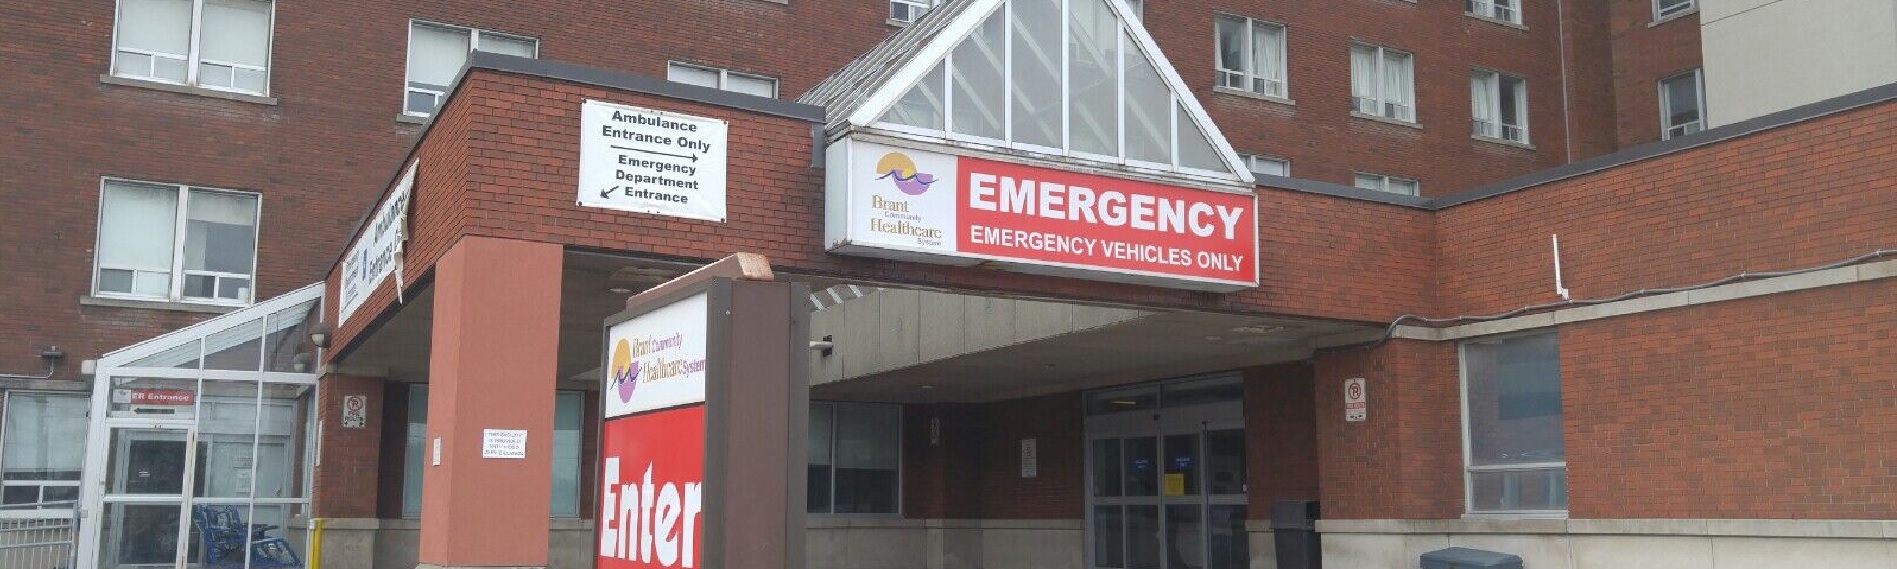 Emergency entrance at Brantford General Hospital